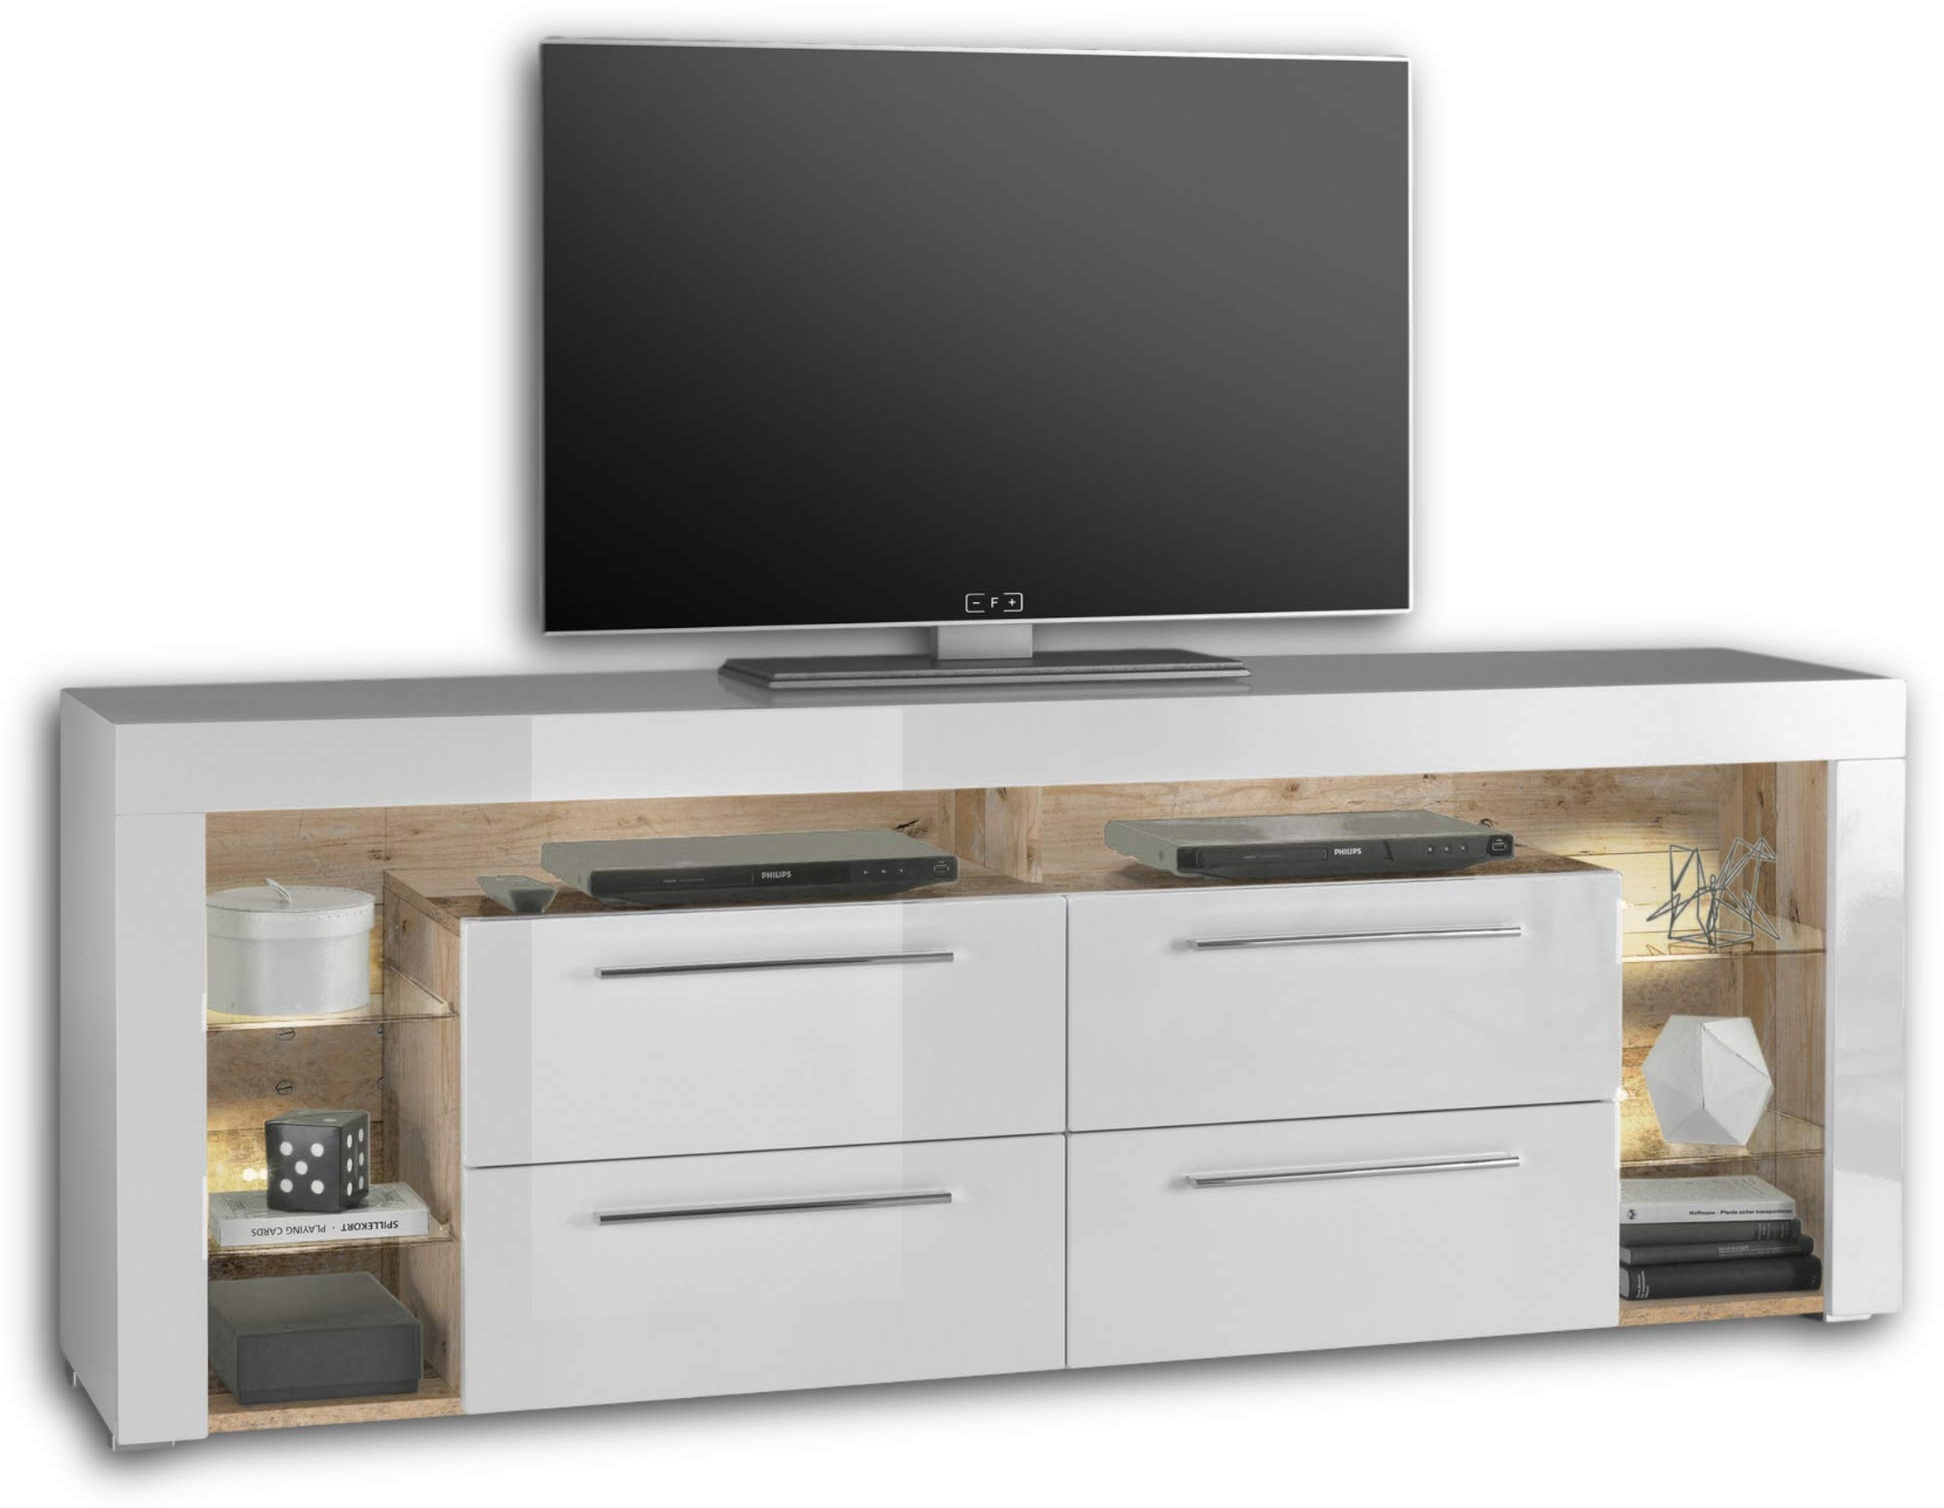 GOAL TV-Lowboard in Old Style Optik, Weiß mit LED-Beleuchtung - hochwertiges TV-Board mit viel Stauraum für Ihr Wohnzimmer - 179 x 66 x 44 cm (B/H/T)